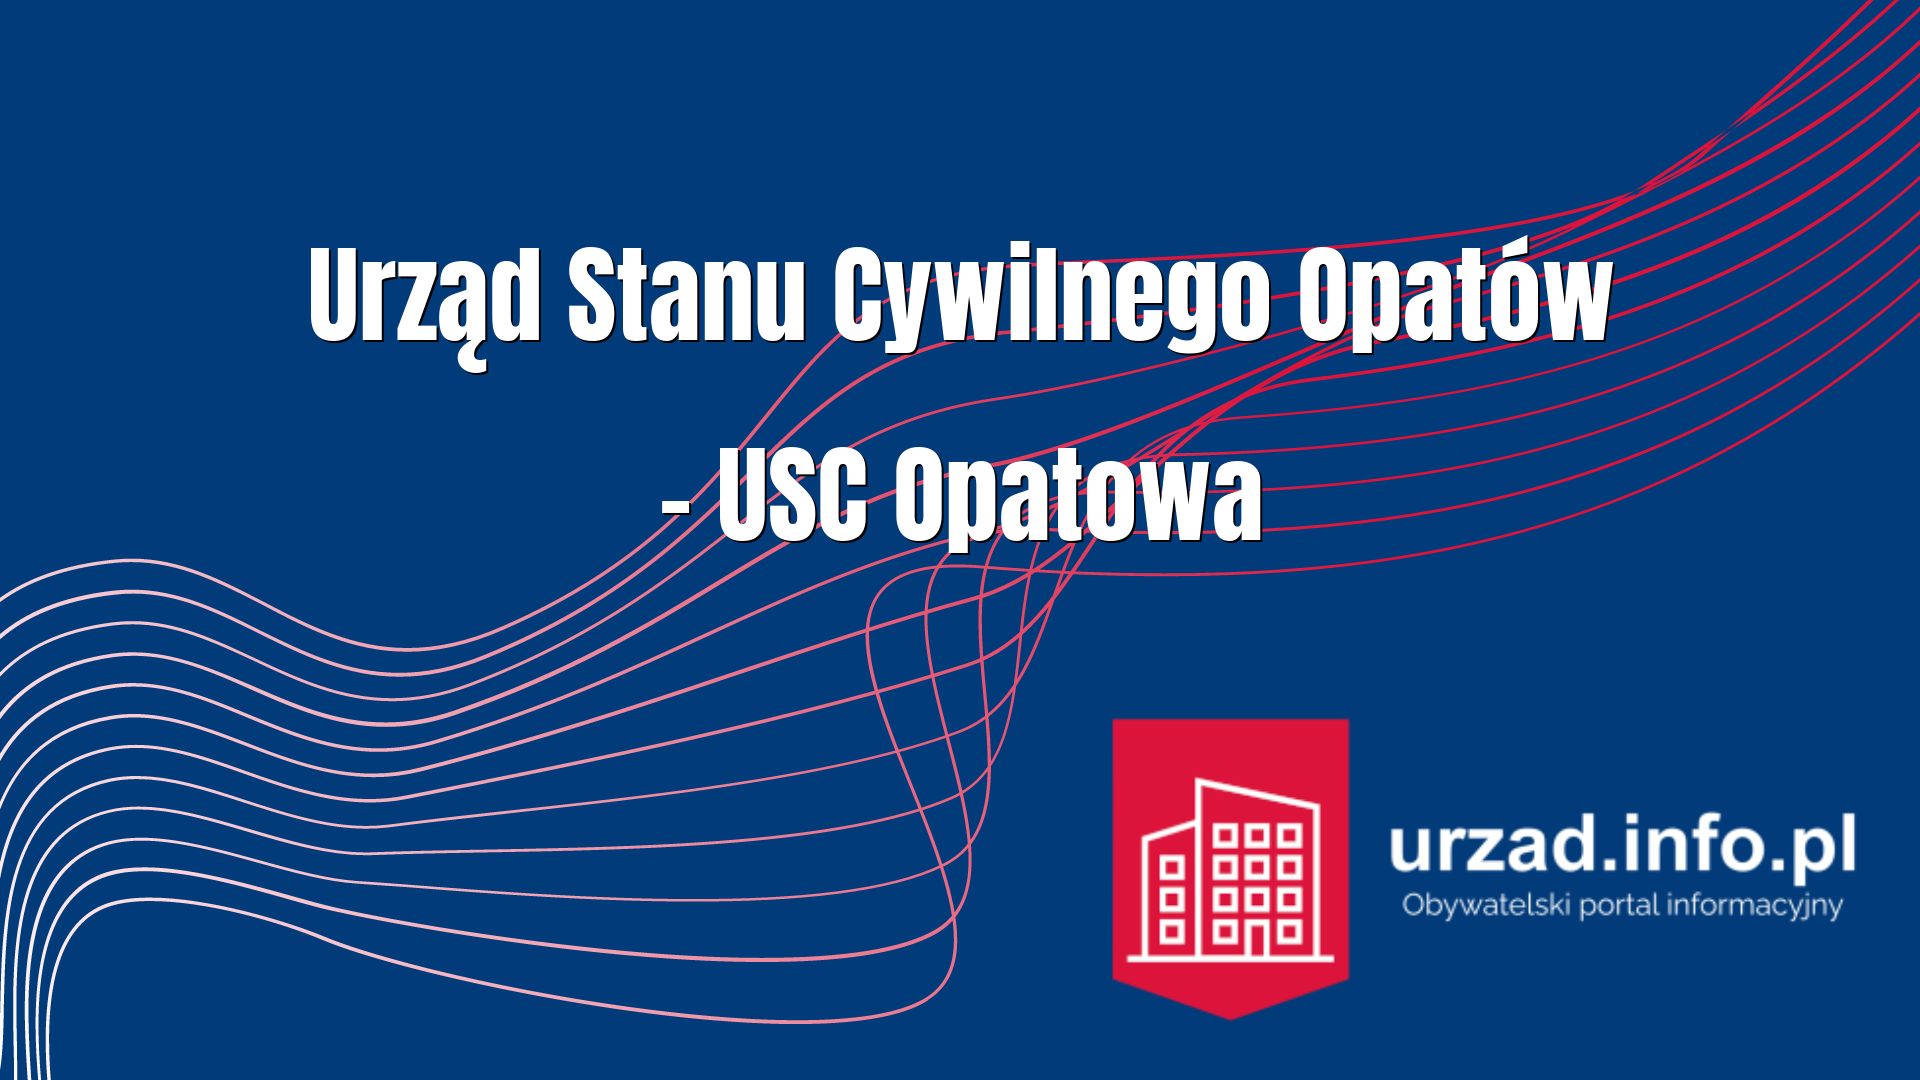 Urząd Stanu Cywilnego Opatów – USC Opatowa